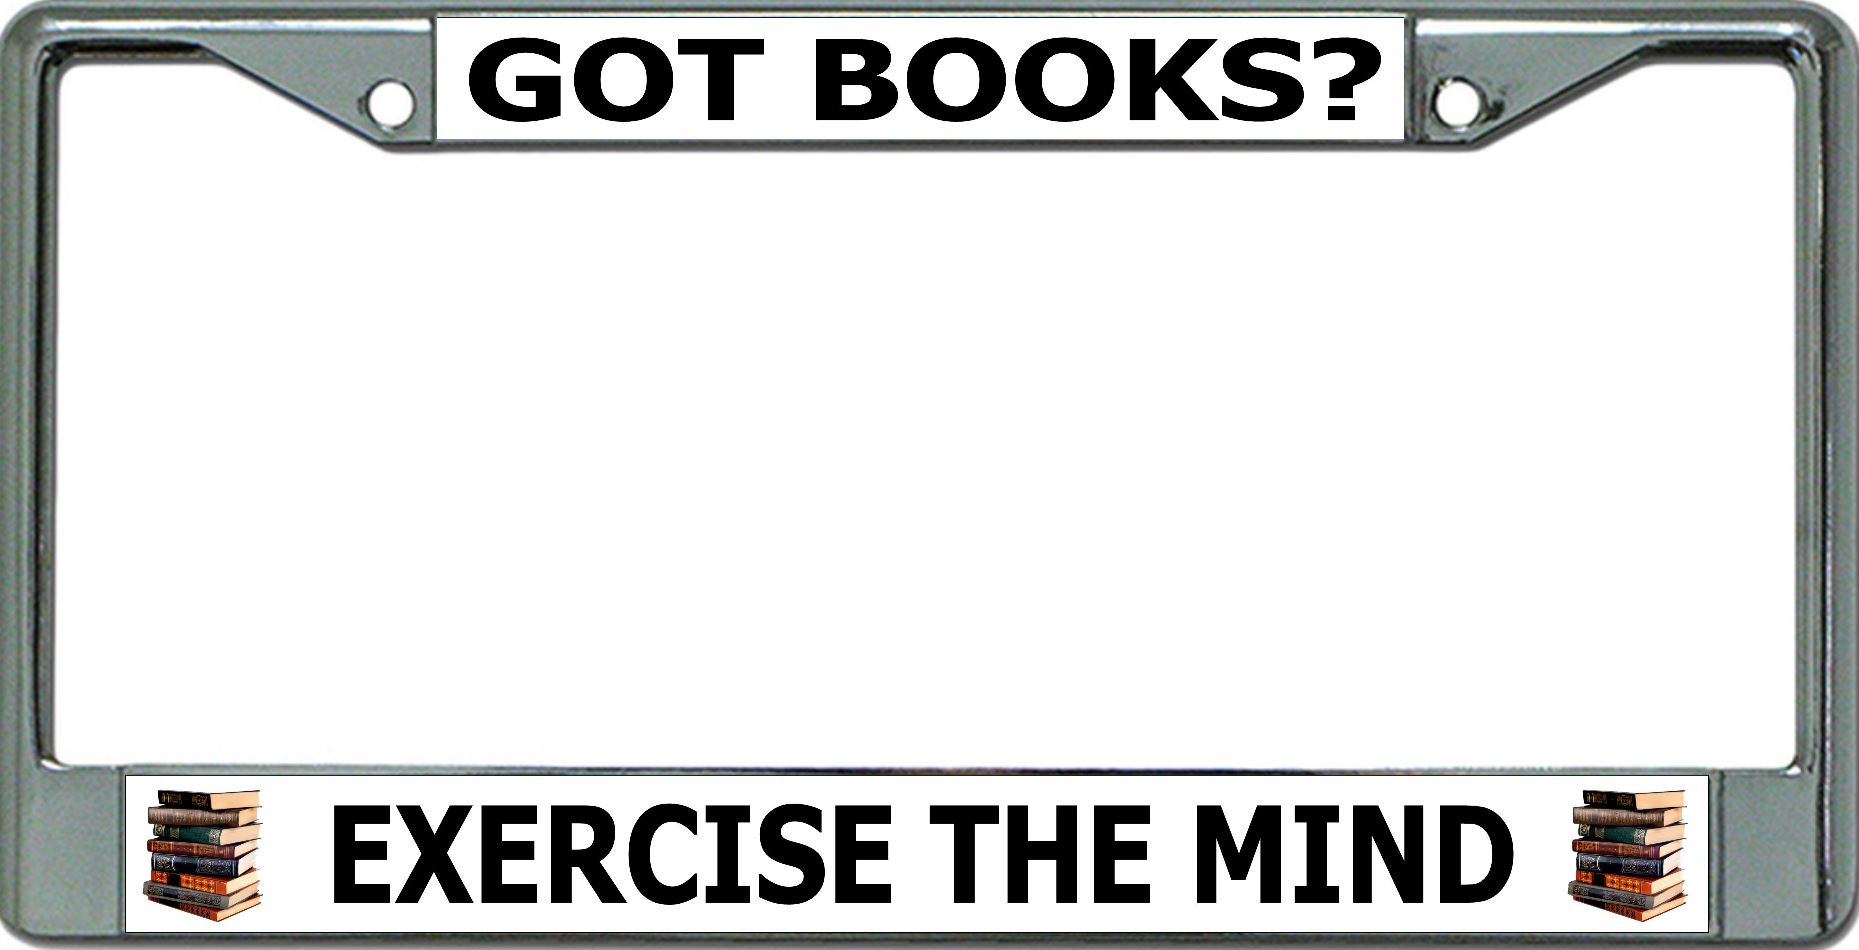 Got BOOKs Exercise The Mind Chrome License Plate Frame